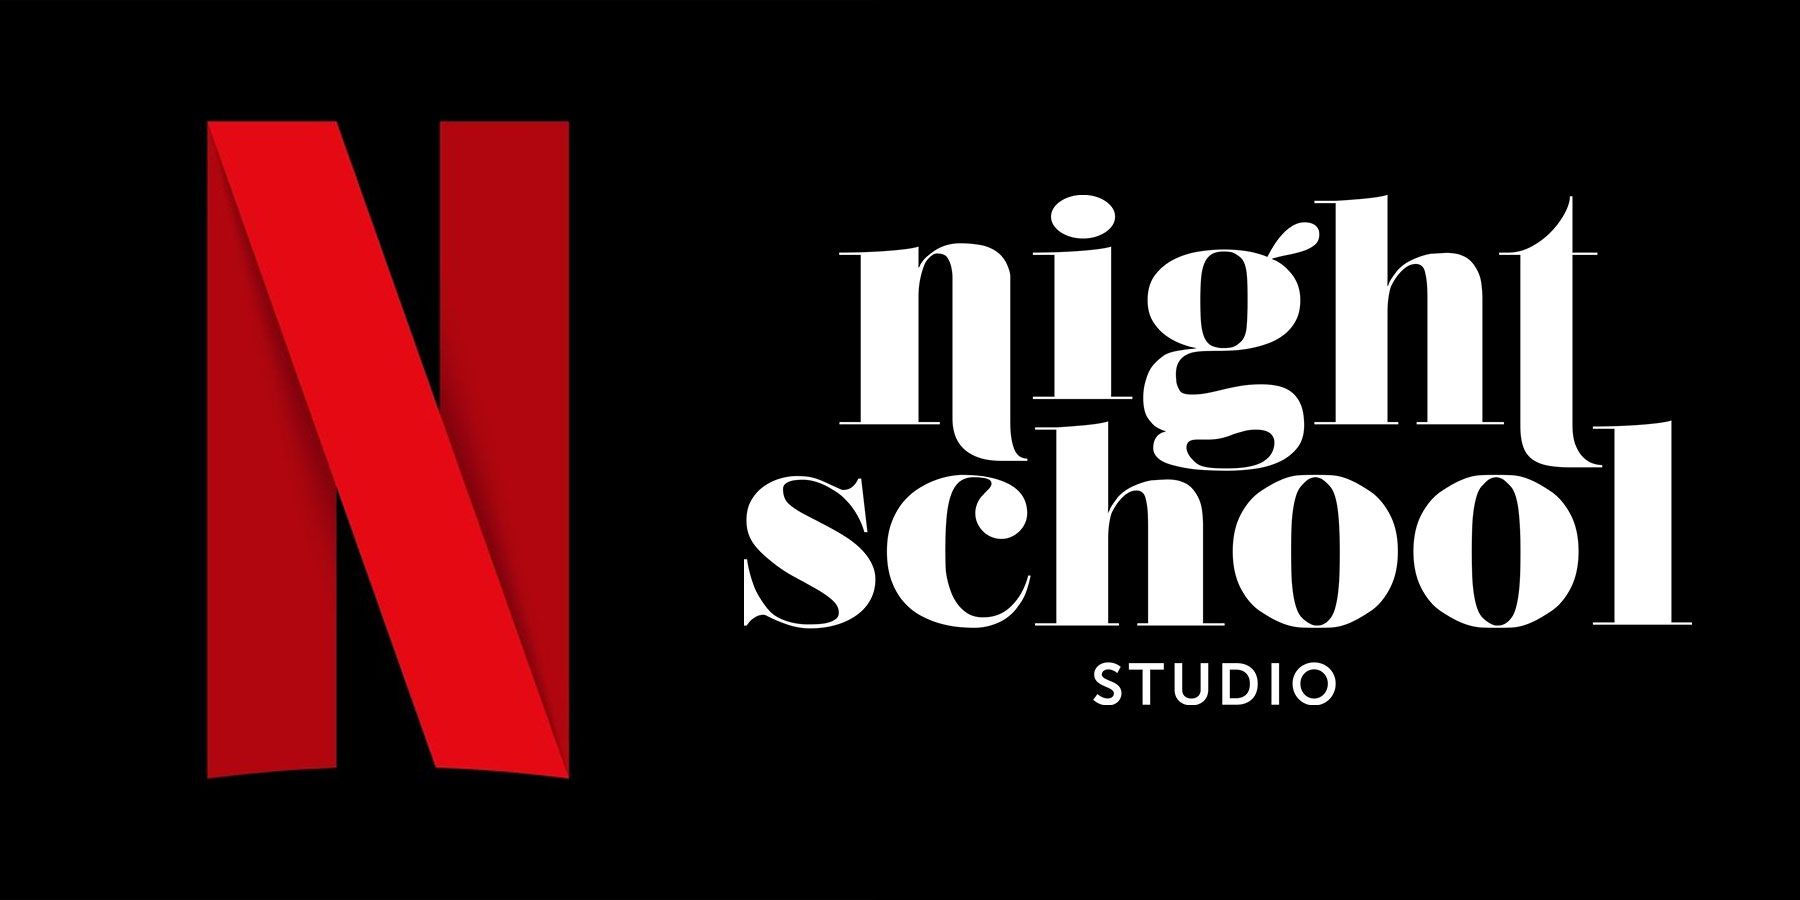 يعد Netflix Acquiring Night School Studio علامة جيدة لطموحات البث